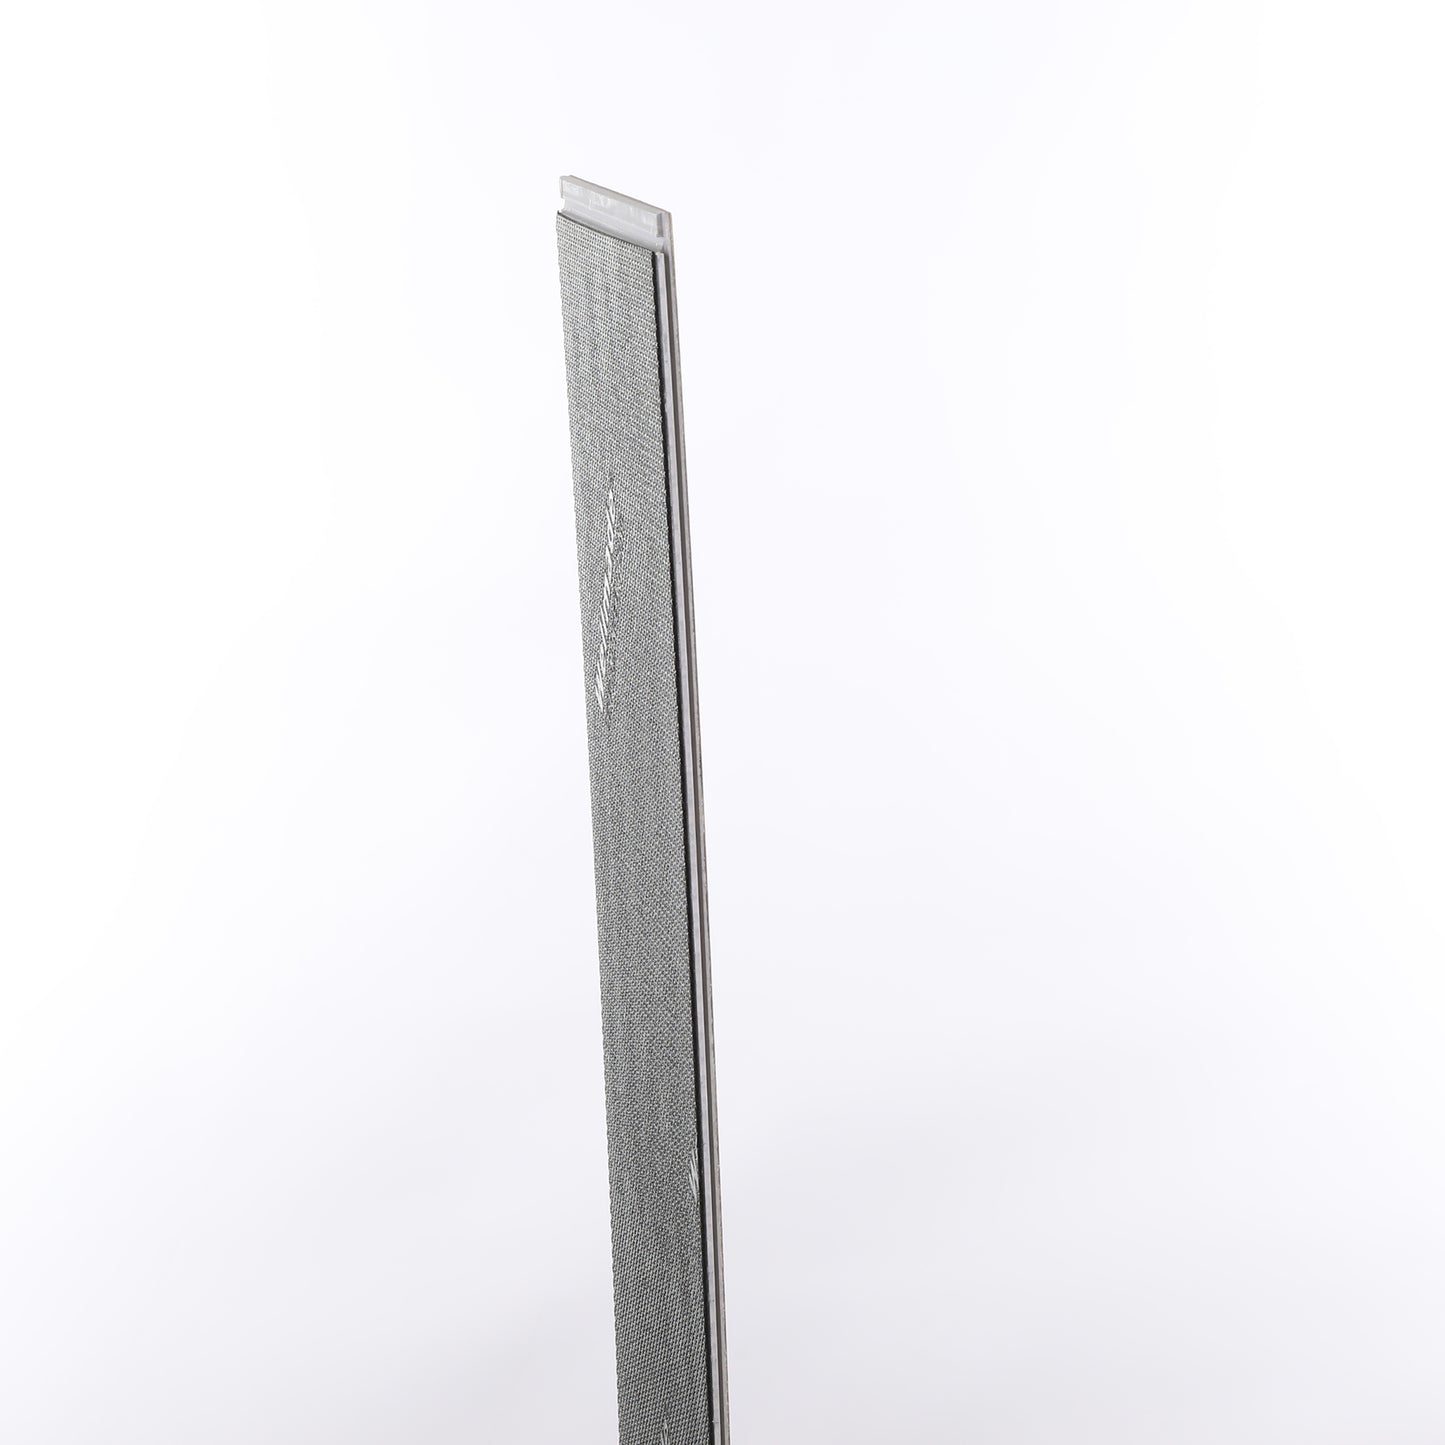 7mm Winter Stone Waterproof Engineered Hardwood Flooring 5 in. Wide x Varying Length Long